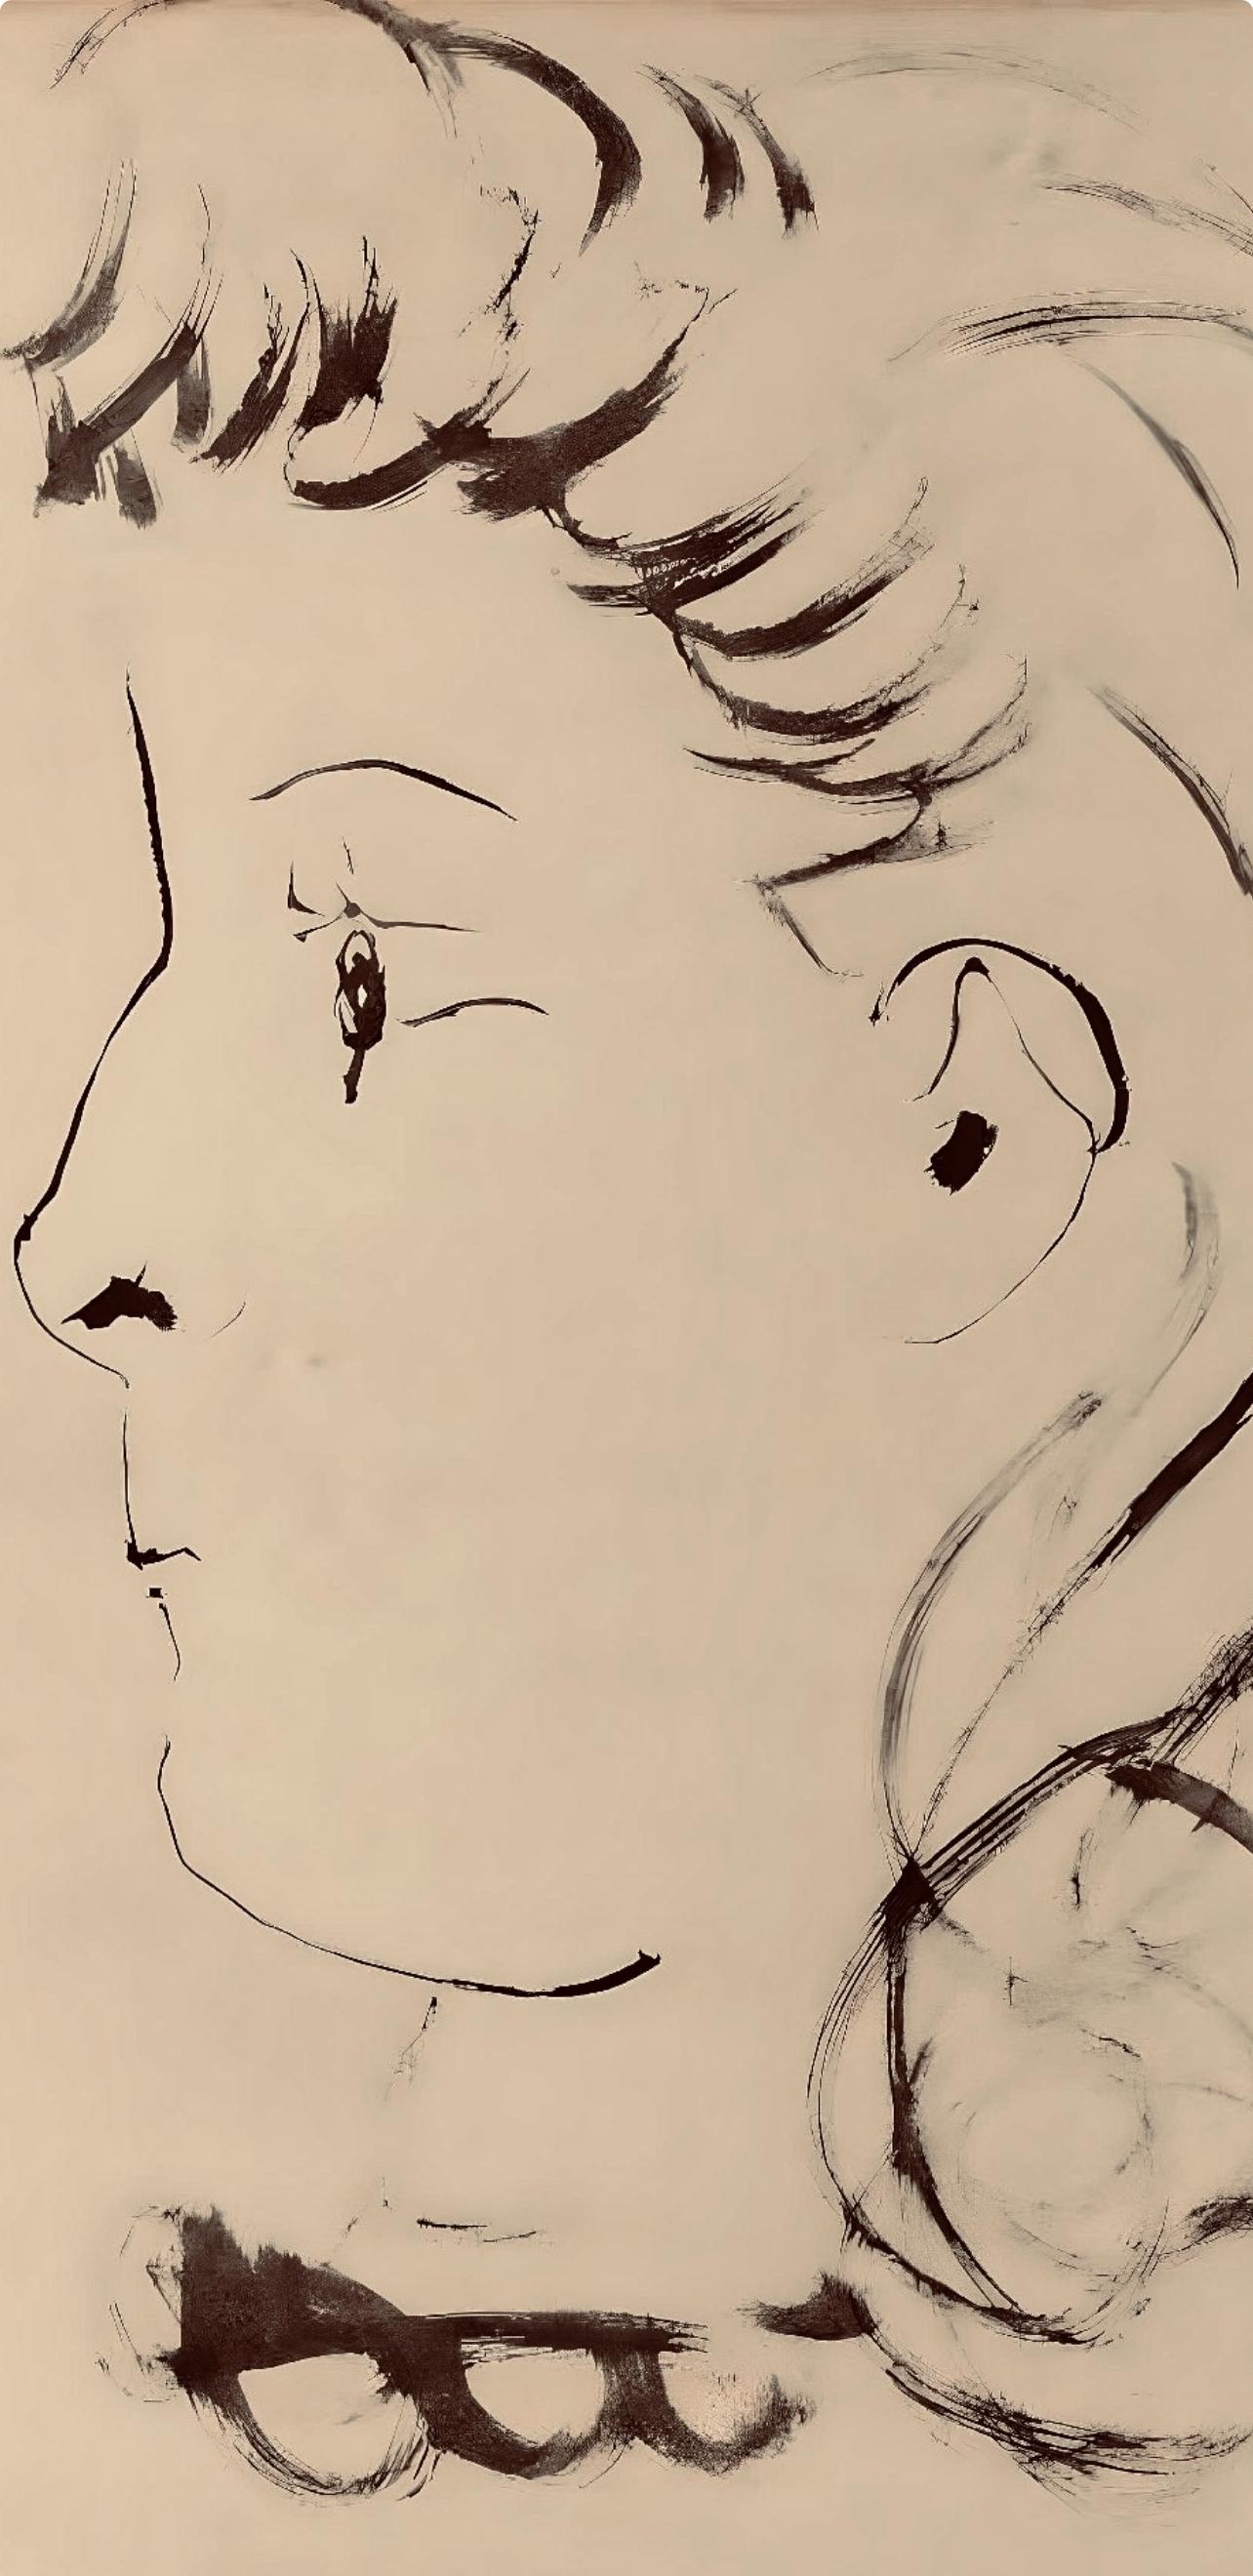 Picasso, Composition, Carnet de dessins de Picasso, Cahiers d’Art (after) - Print by Pablo Picasso